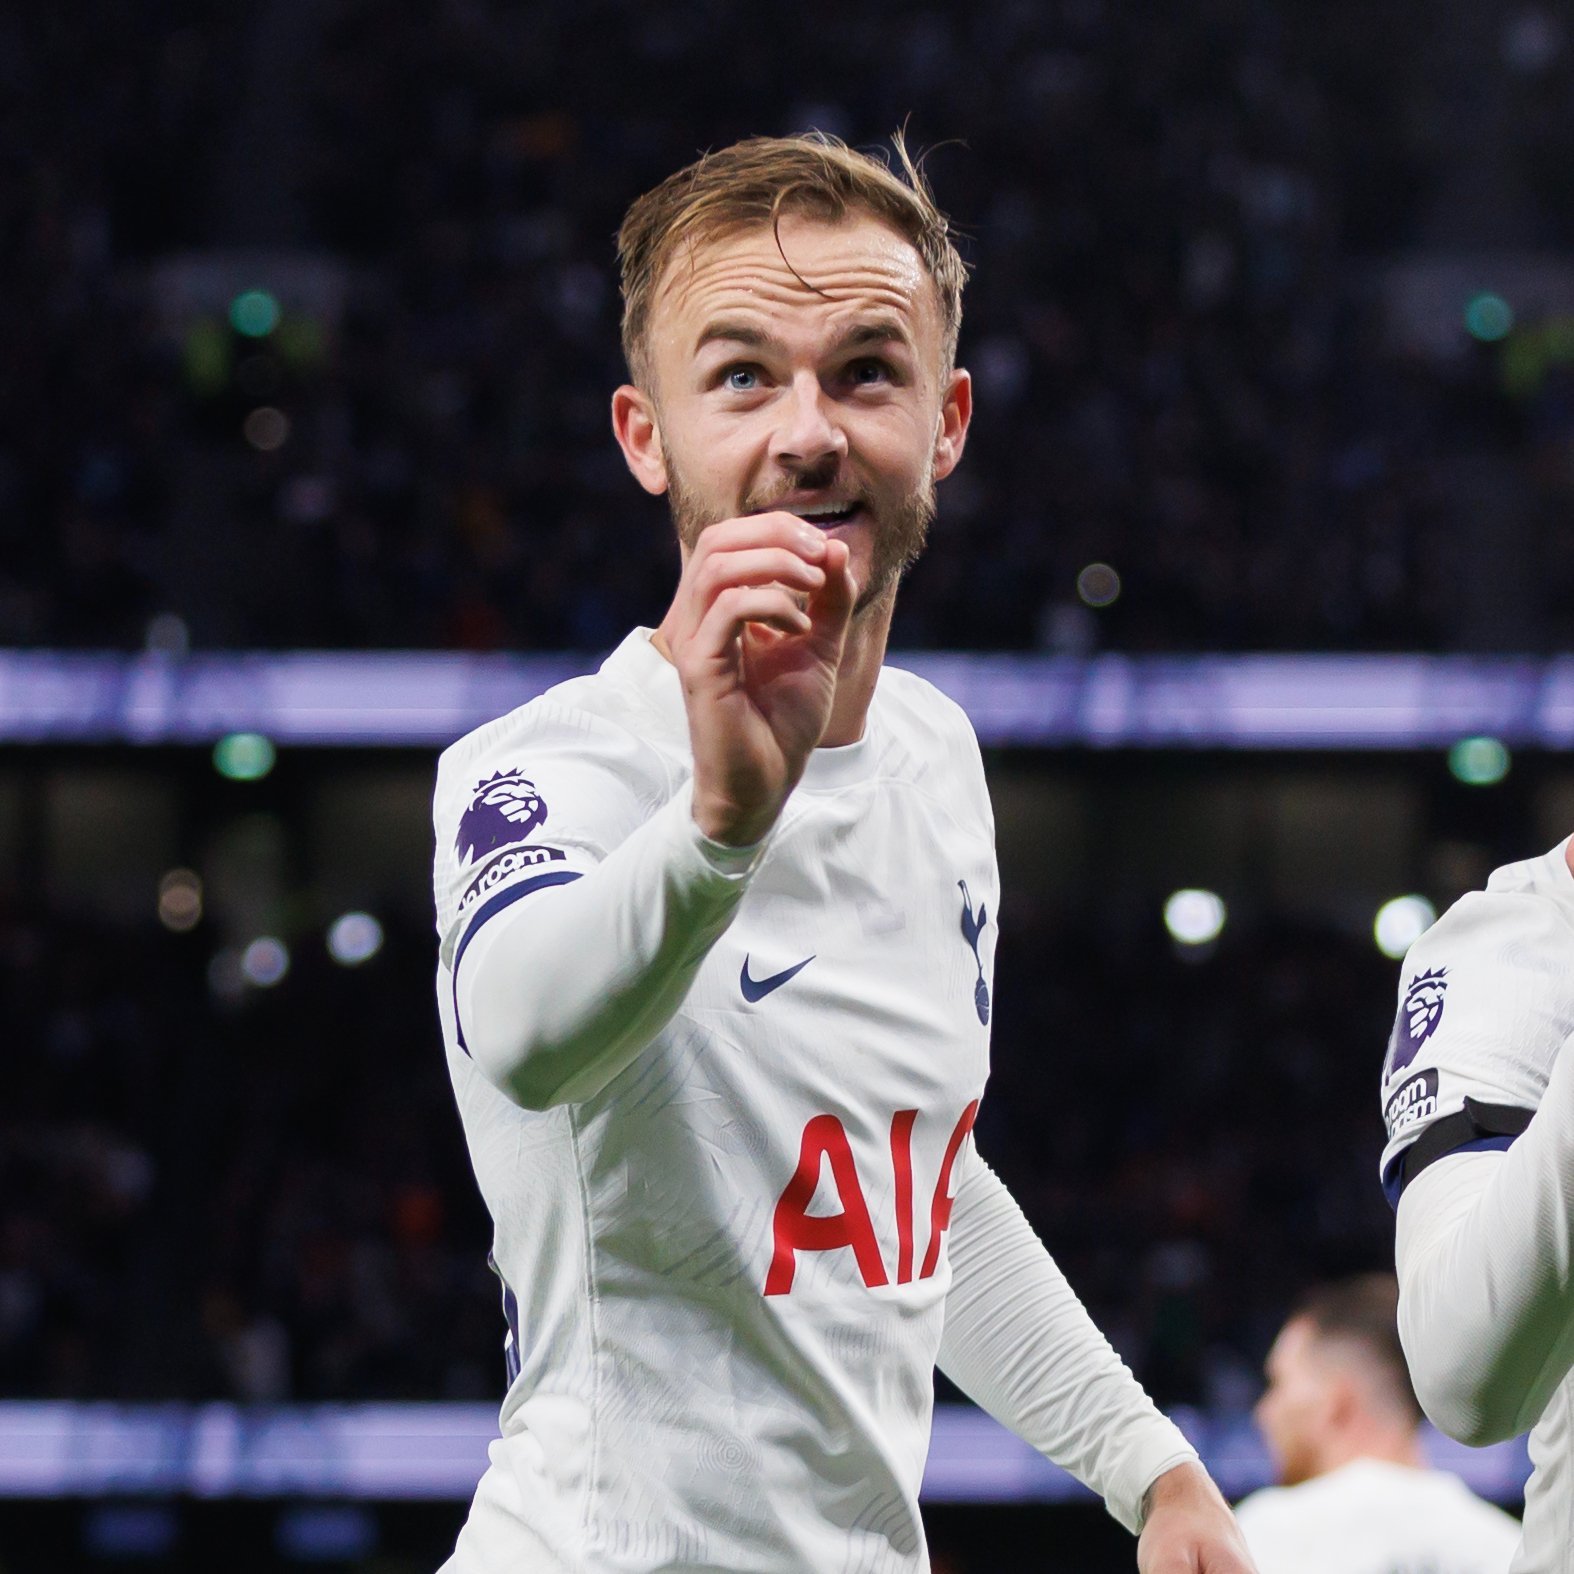 Tottenham Hotspur - New season, new ratings 🔥 EA SPORTS FC // #FC24